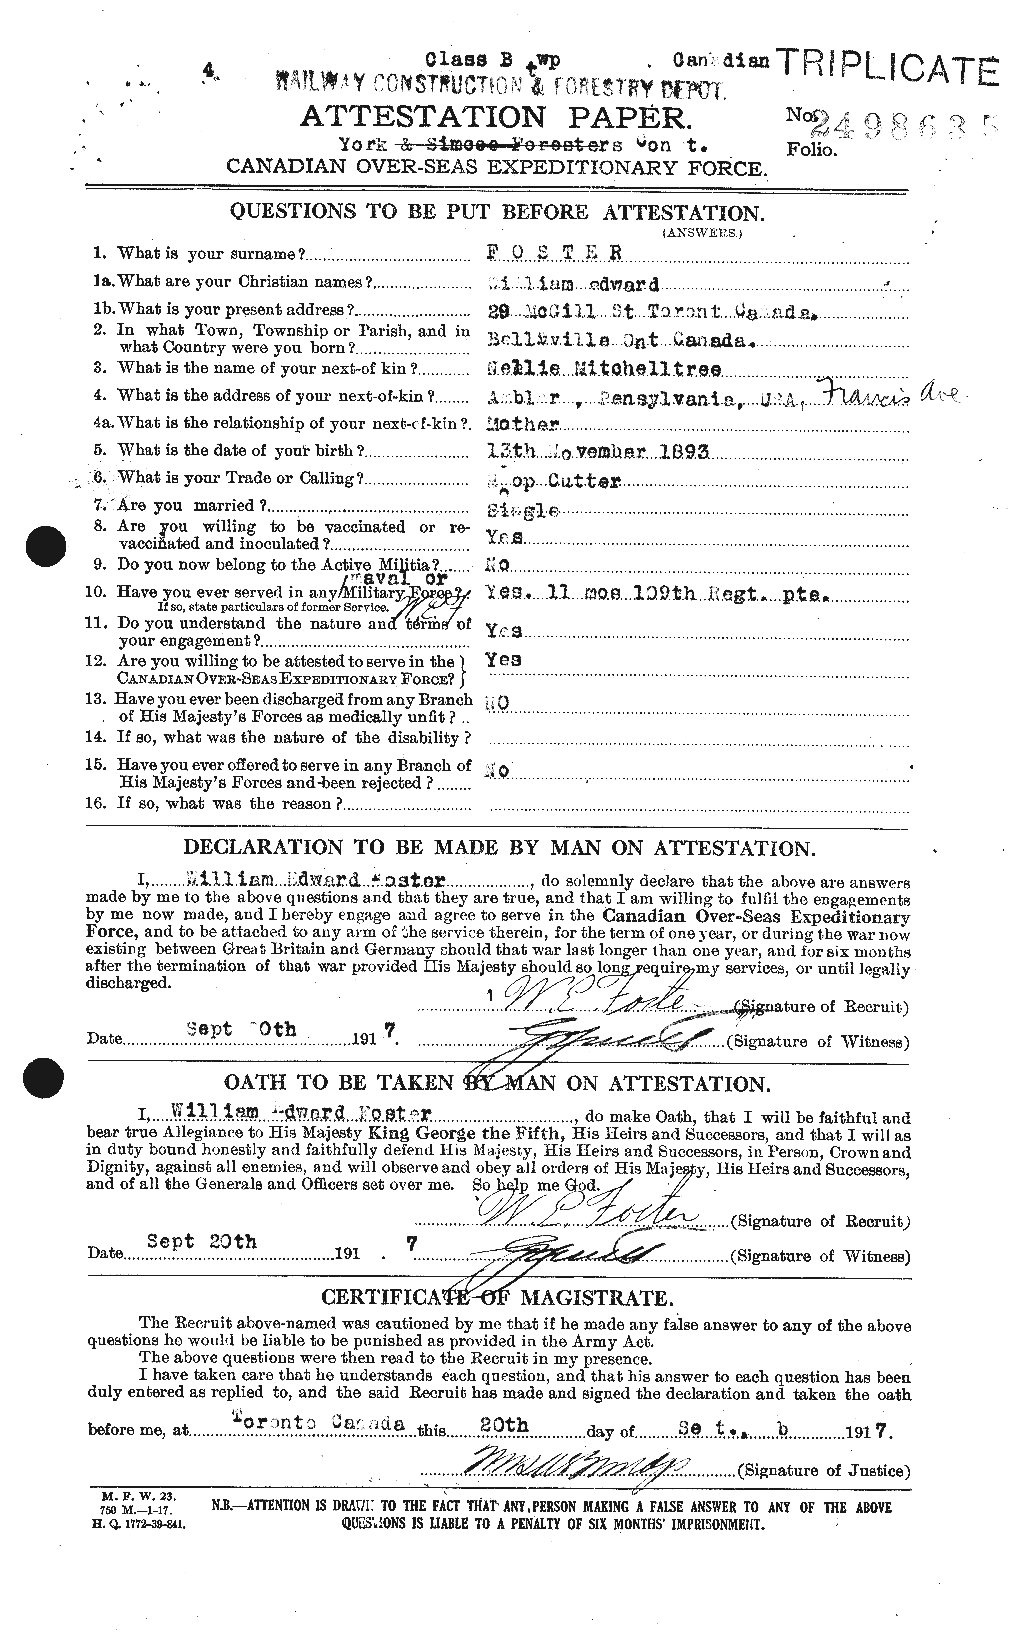 Dossiers du Personnel de la Première Guerre mondiale - CEC 328738a